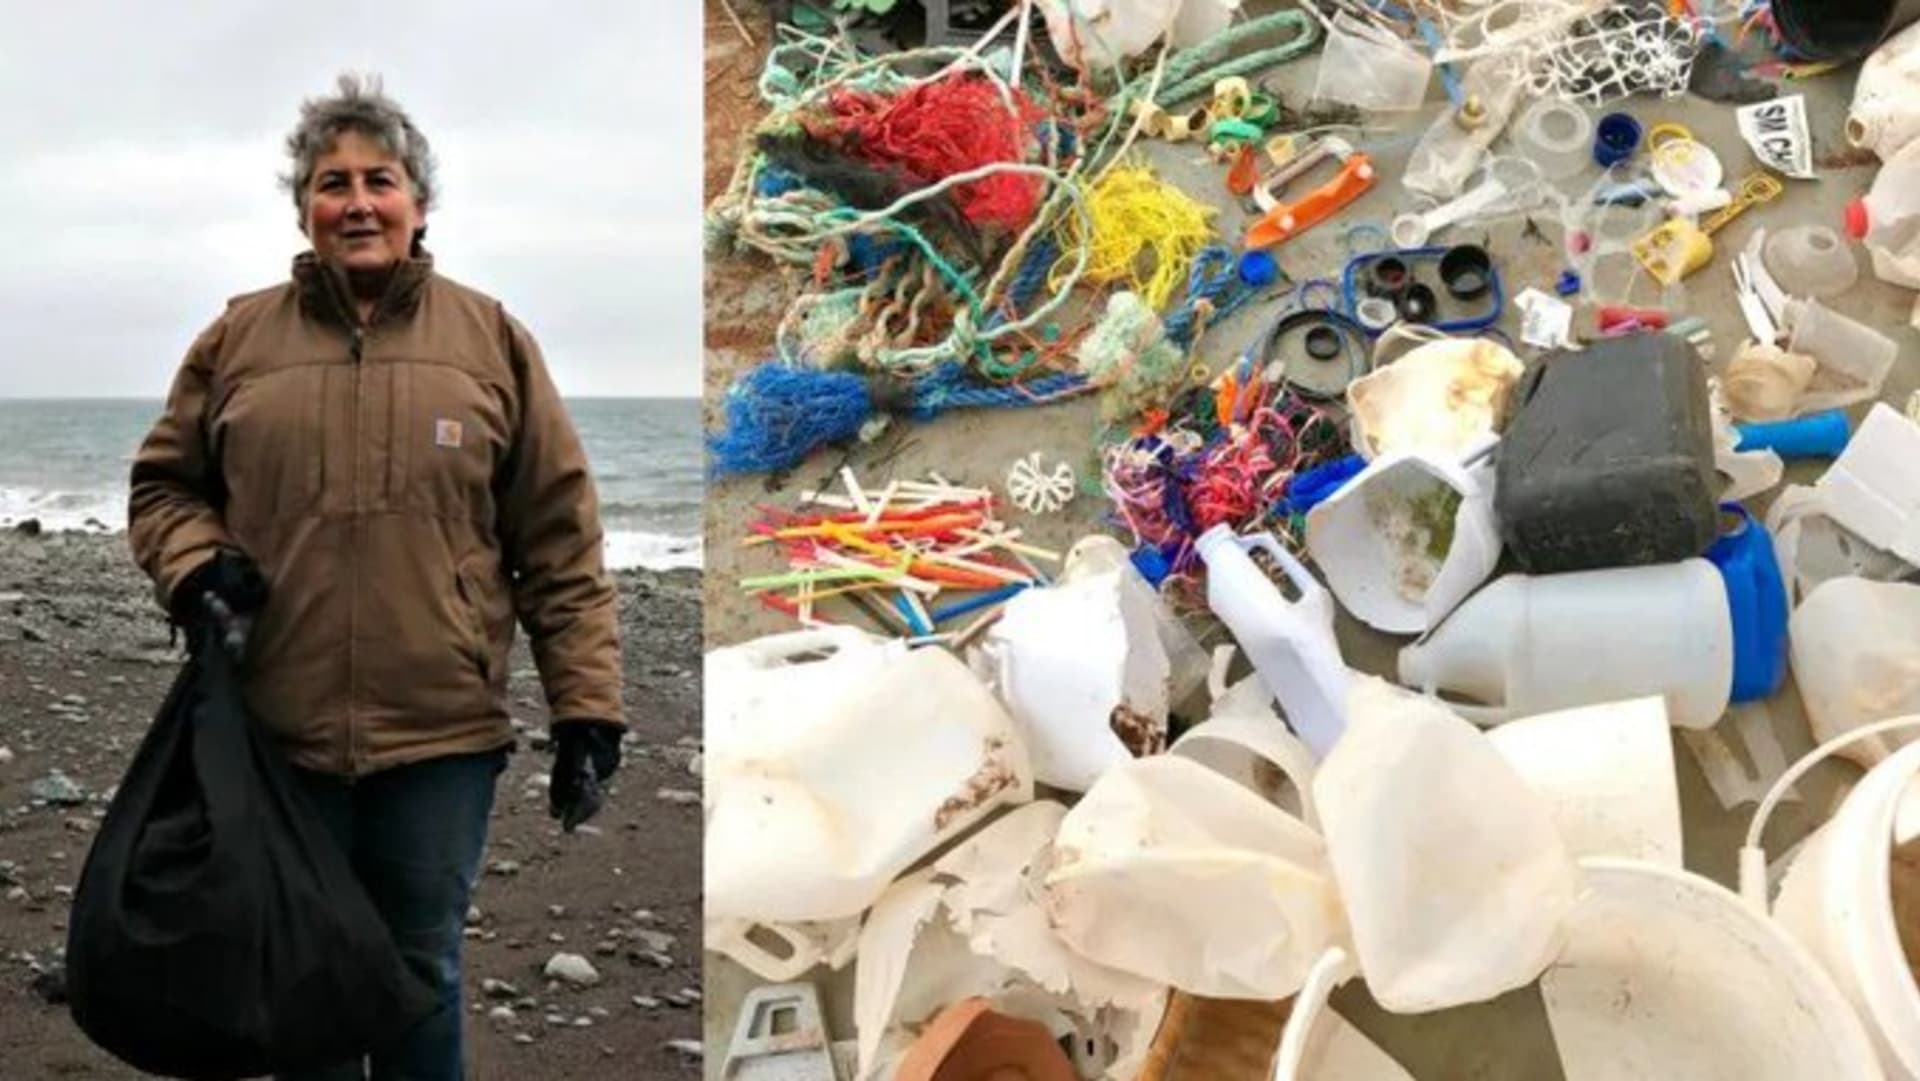 Žena za rok nasbírala 2 tuny plastů v zálivu.